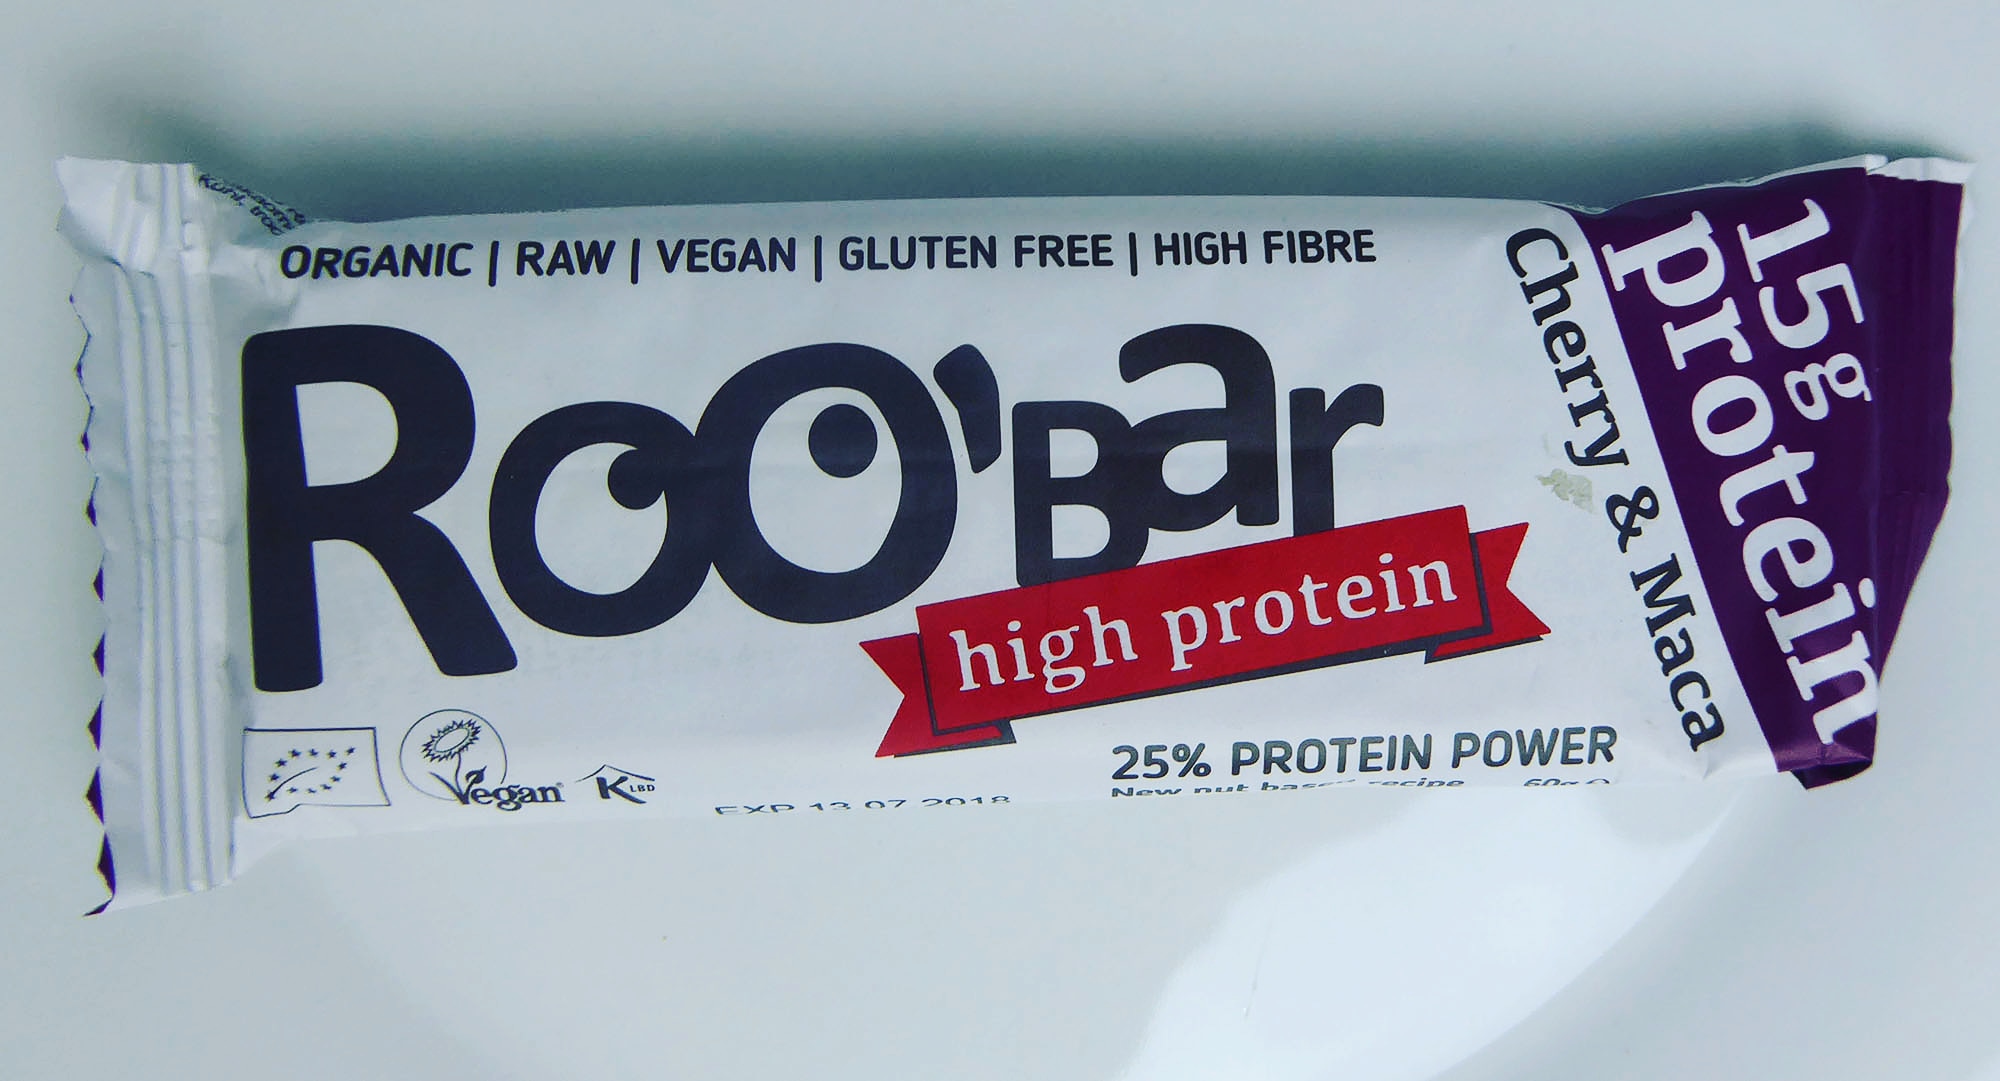 Roobar Proteinriegel Organic Raw Vegan Gluten Free High Fibre